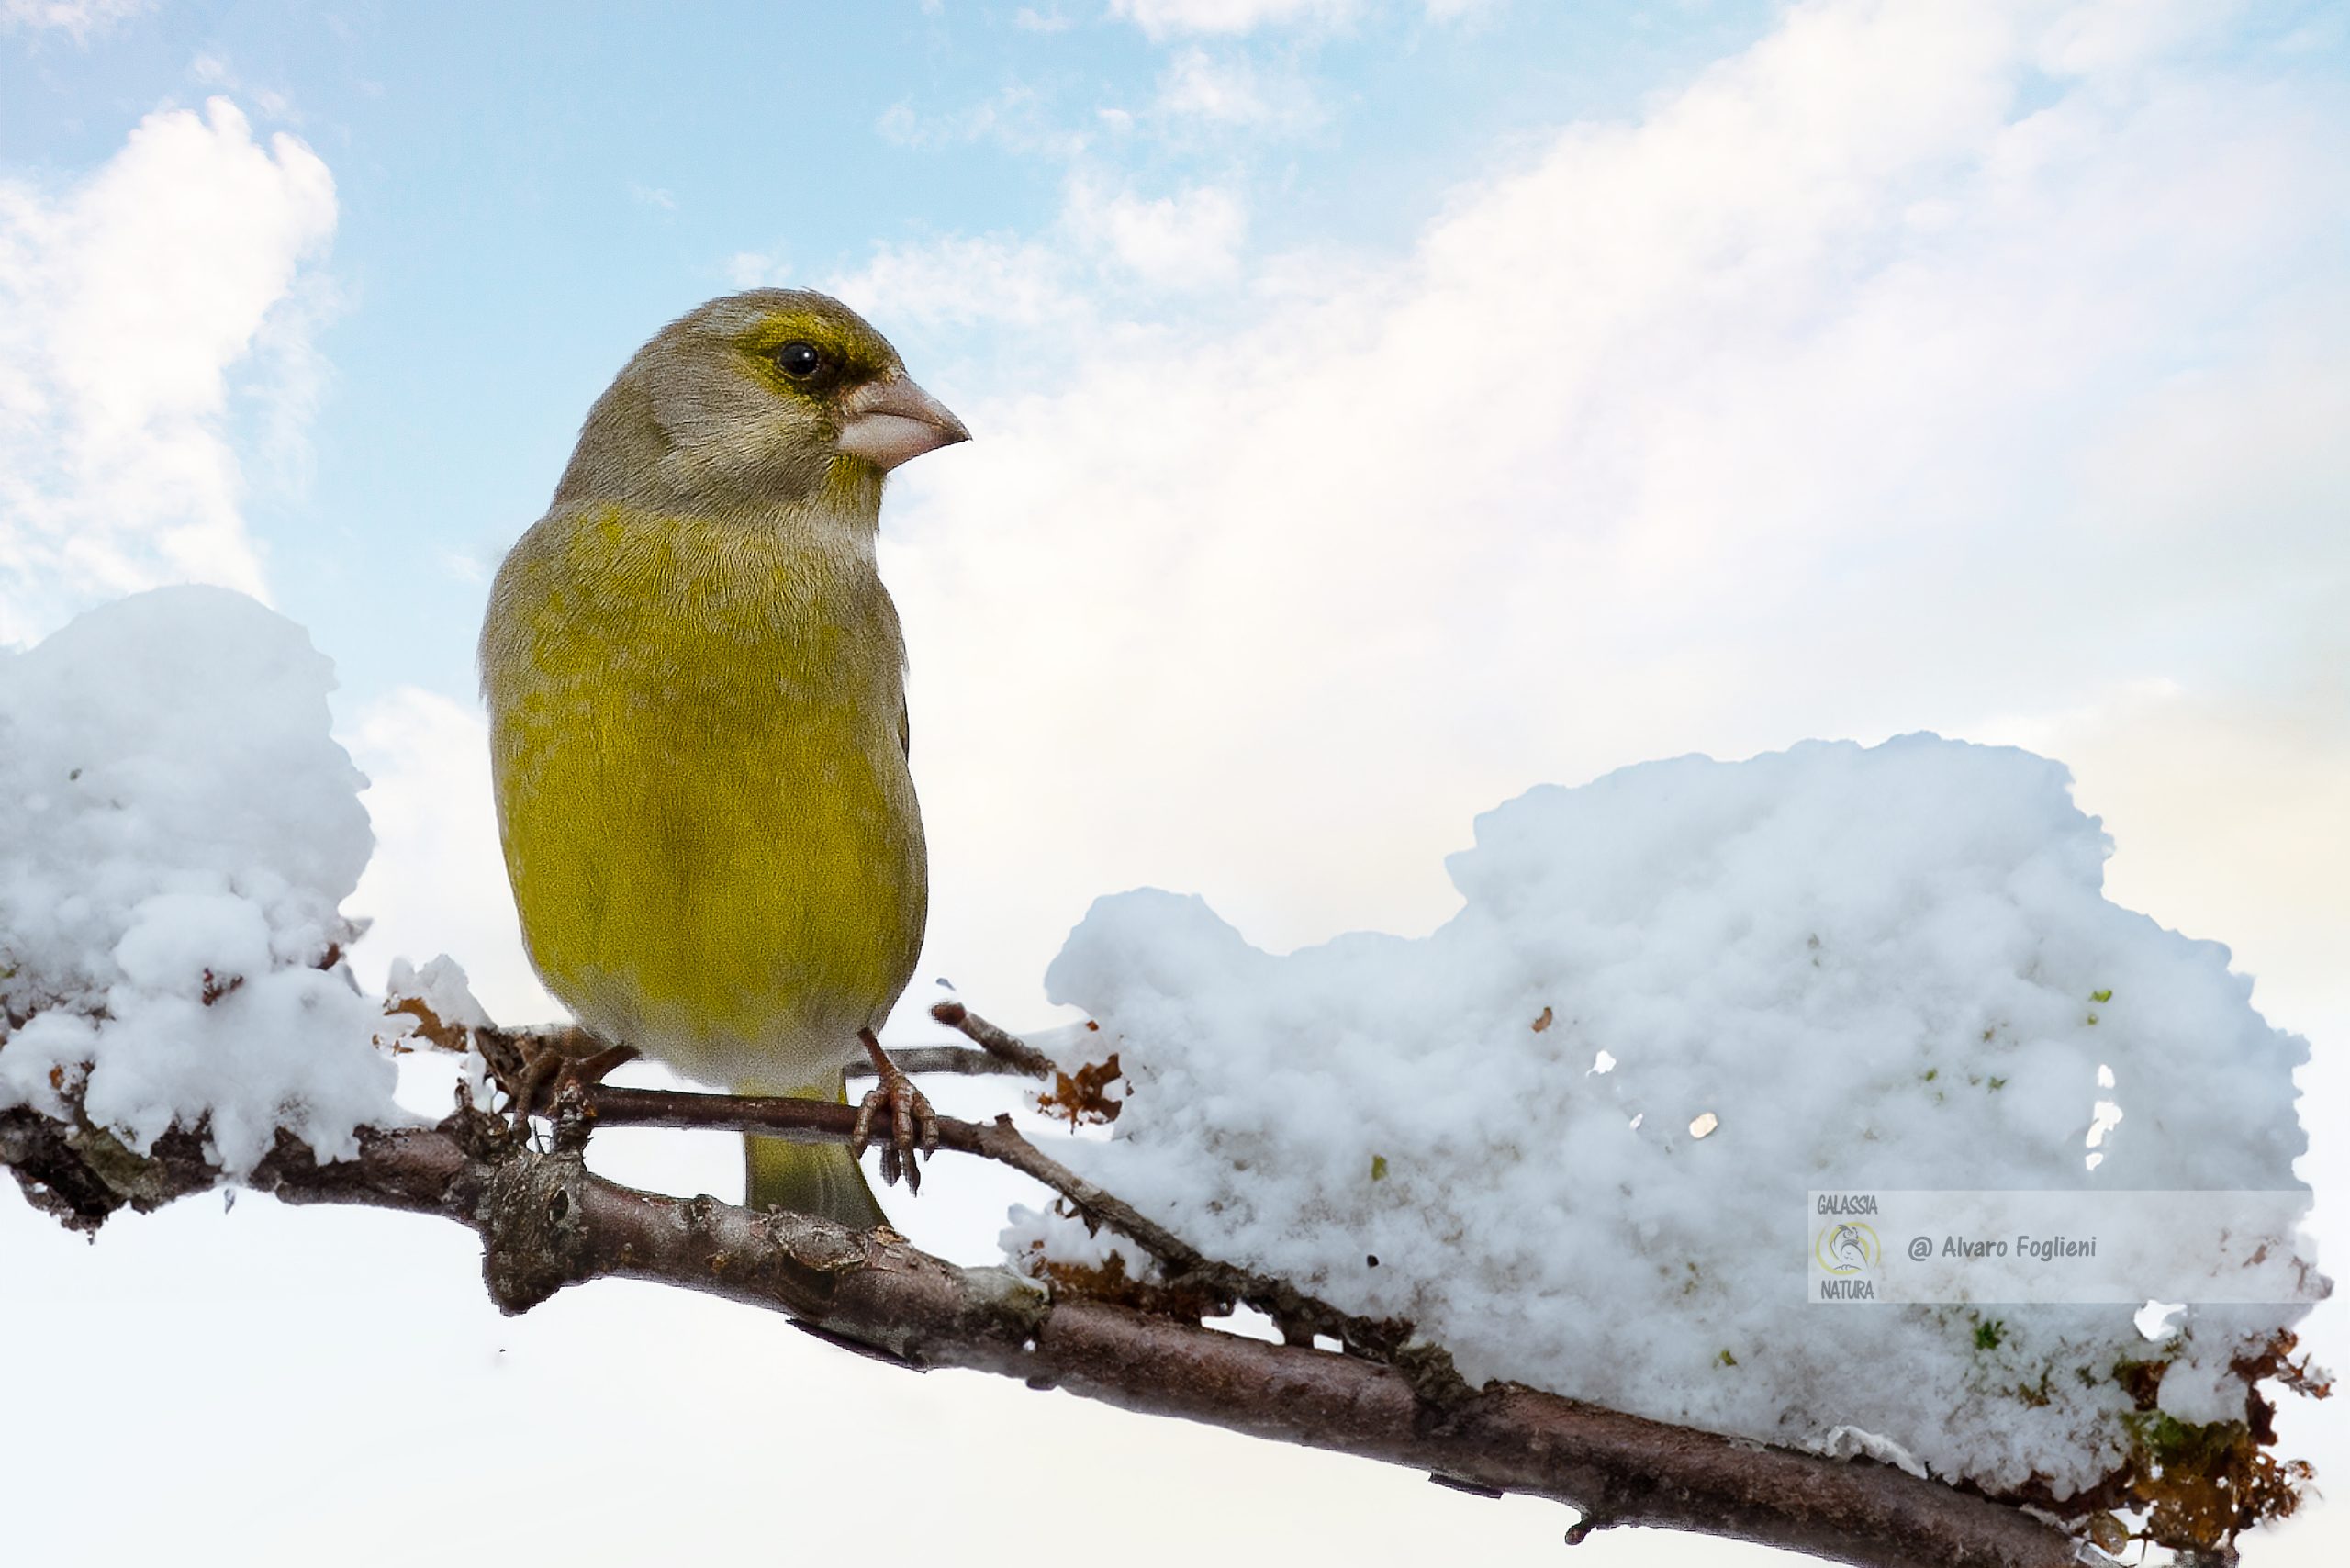 Ritratti uccelli neve, Luce invernale fotografia, Fotografia montana inverno, Compensazione esposizione neve, Misurazione SPOT fotografia